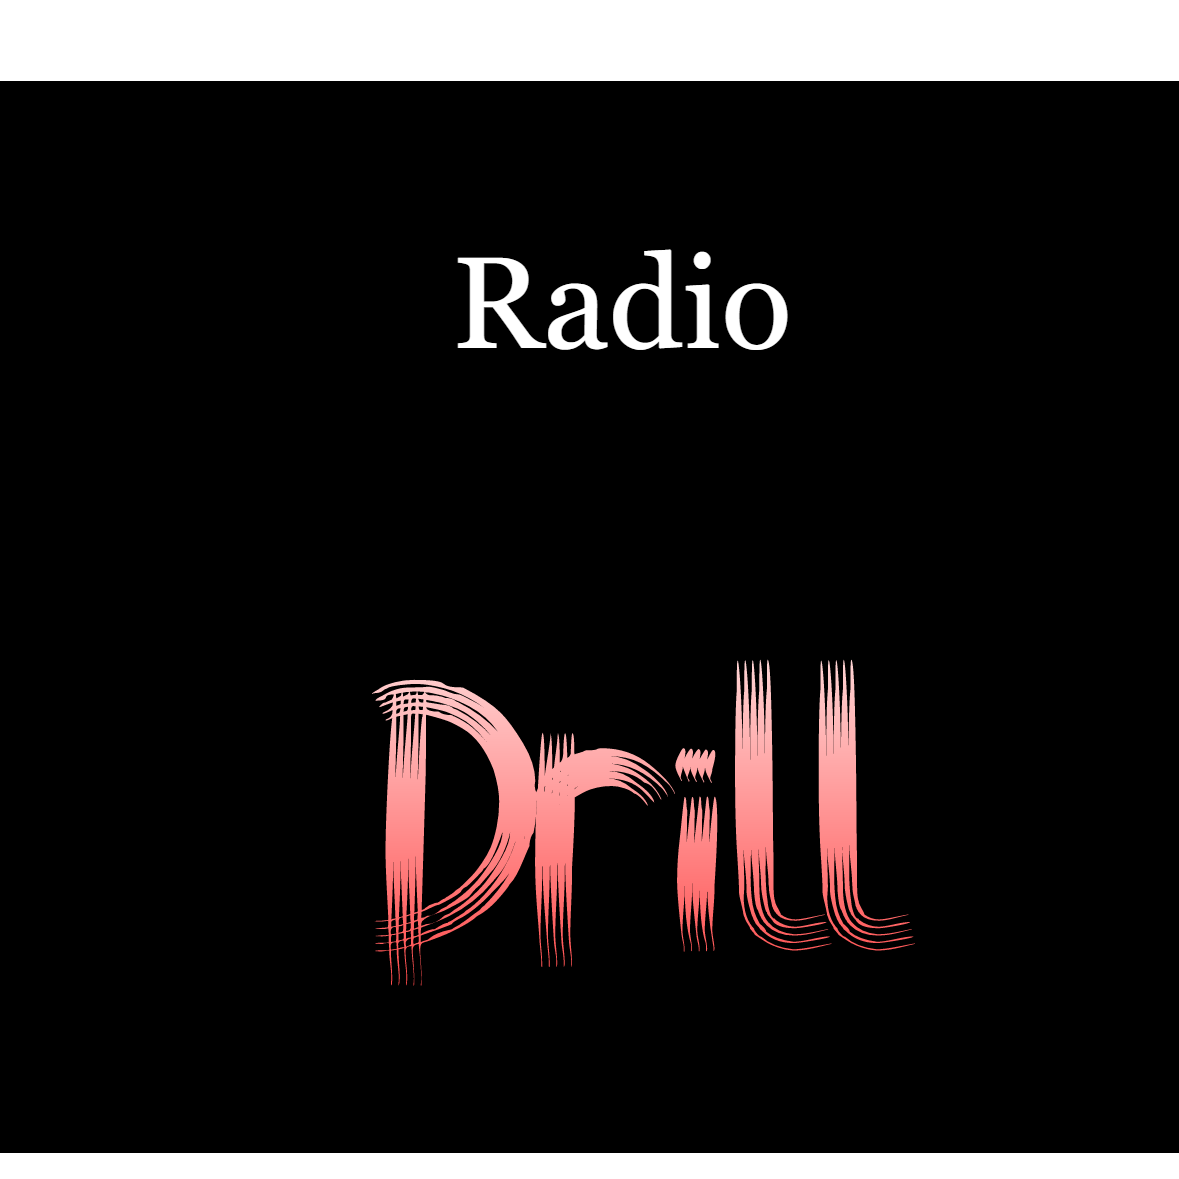 RadioDrill